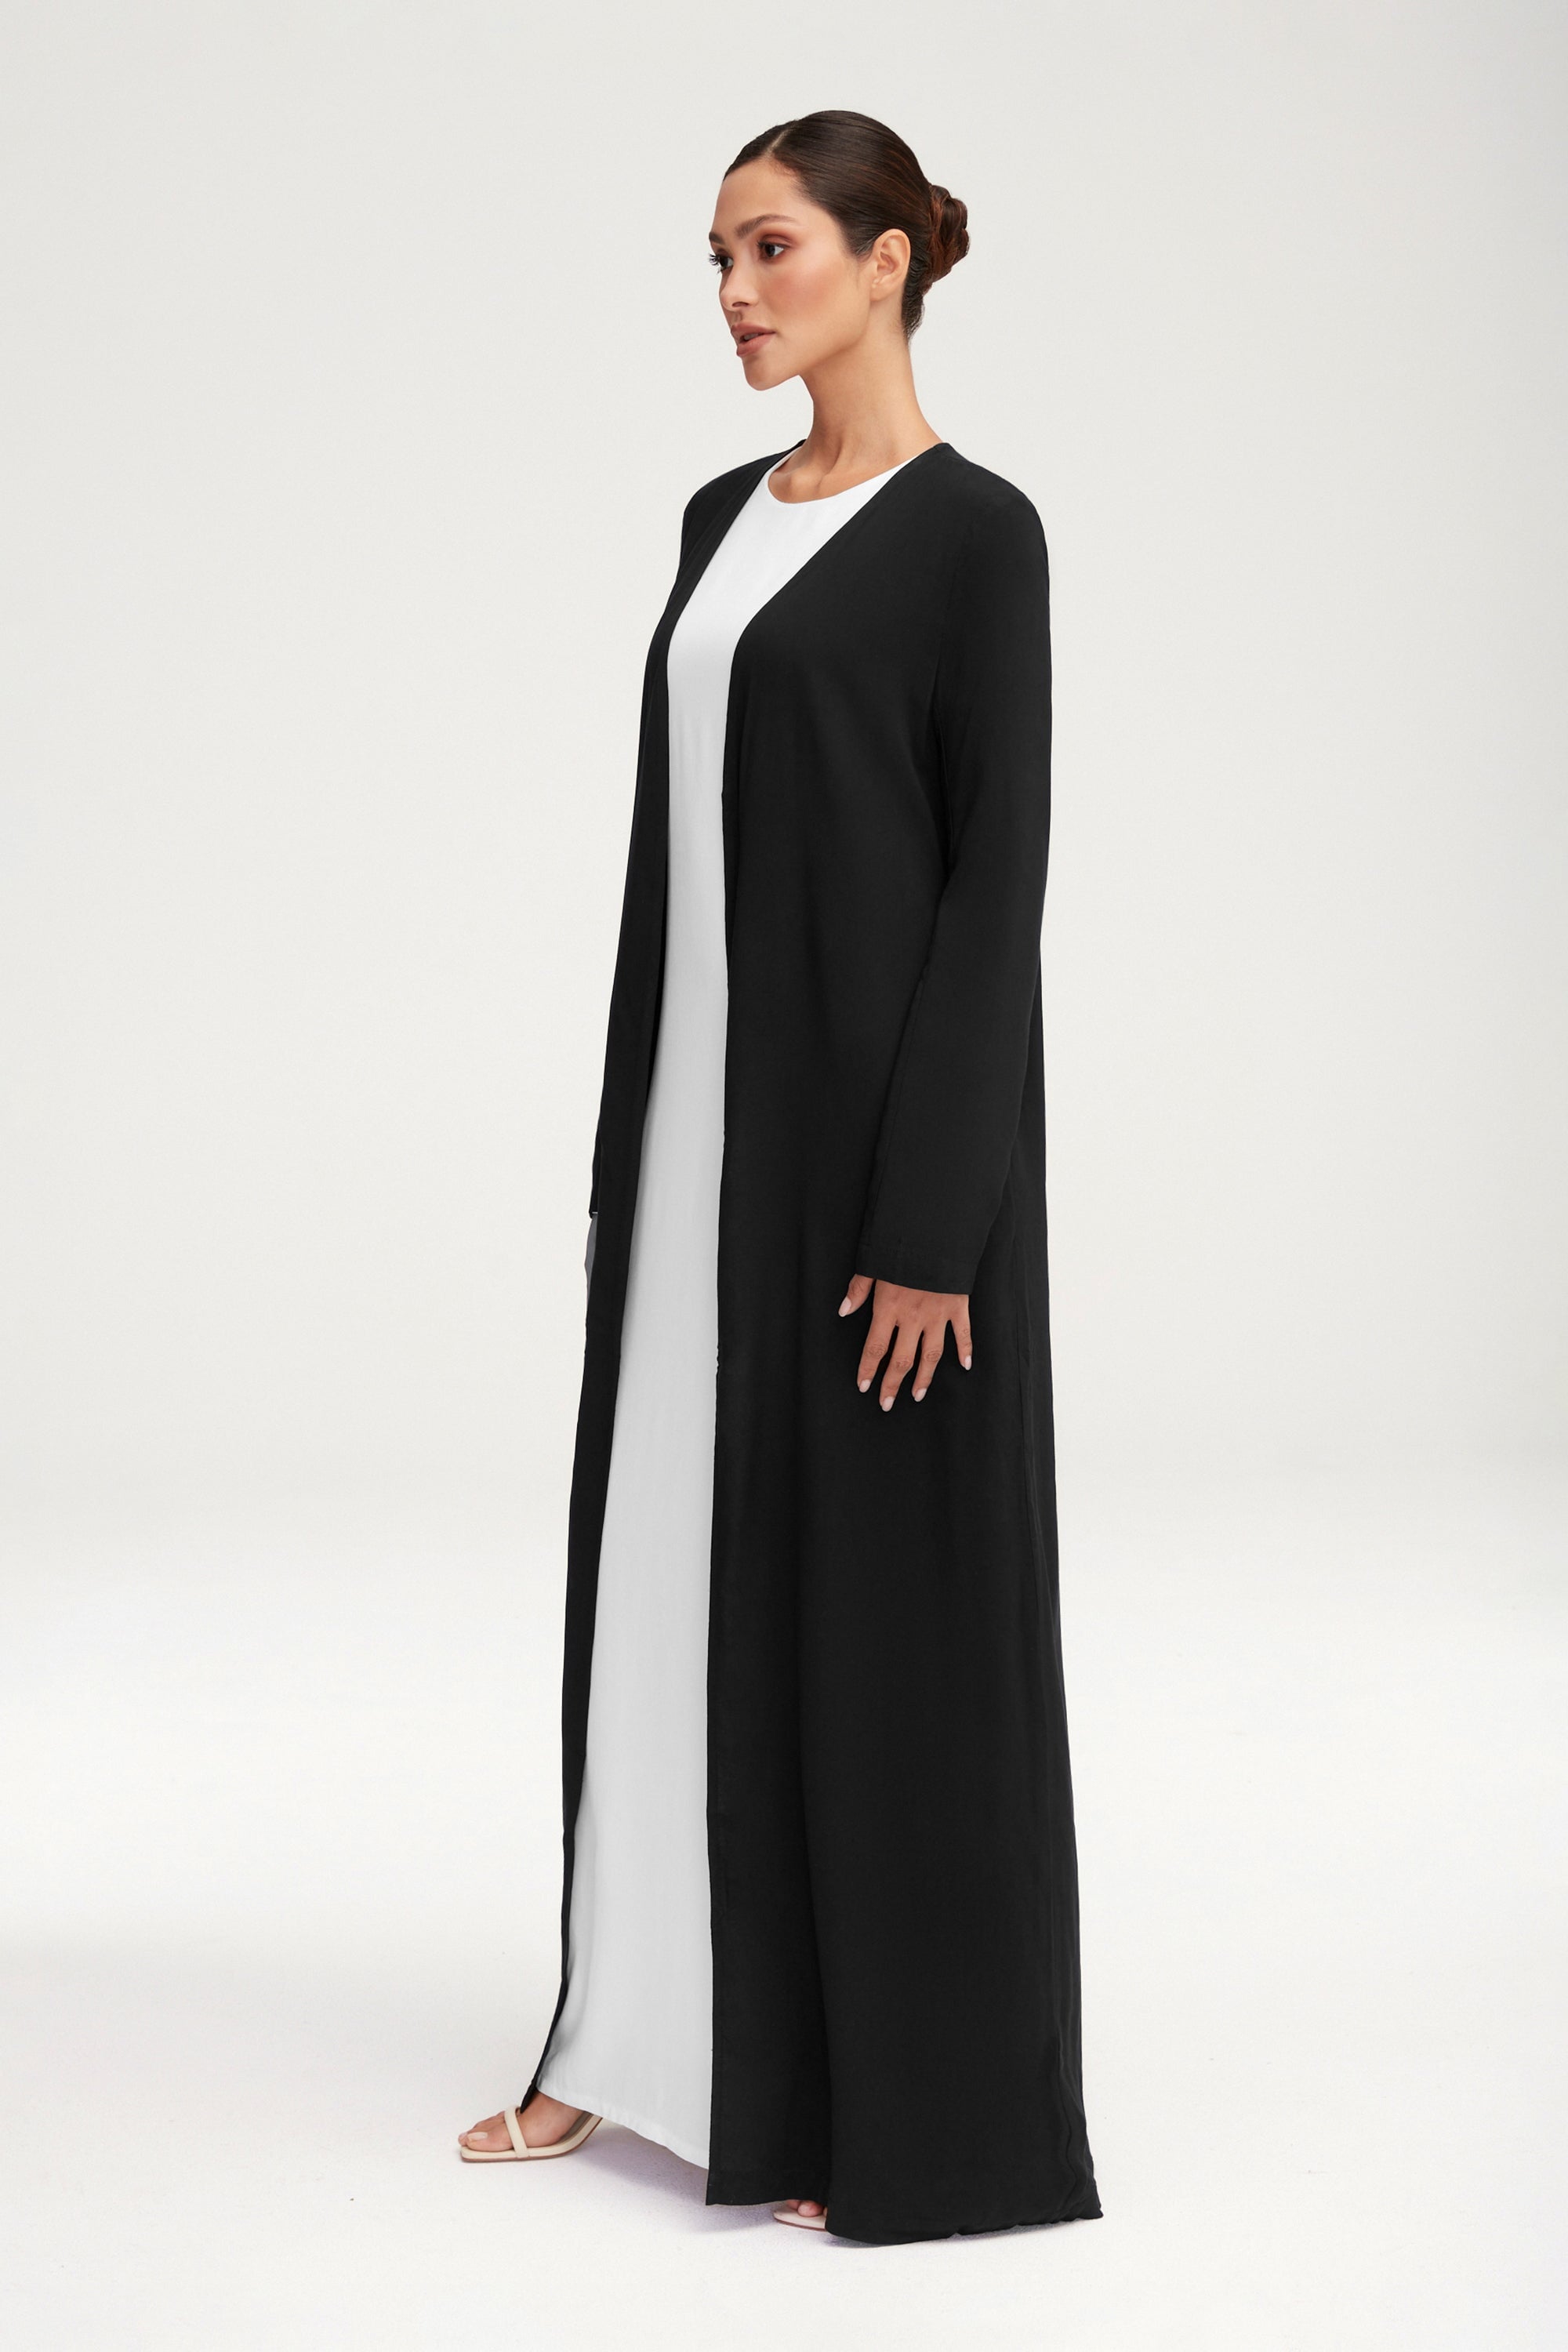 Essential Woven Open Abaya - Black Clothing saigonodysseyhotel 